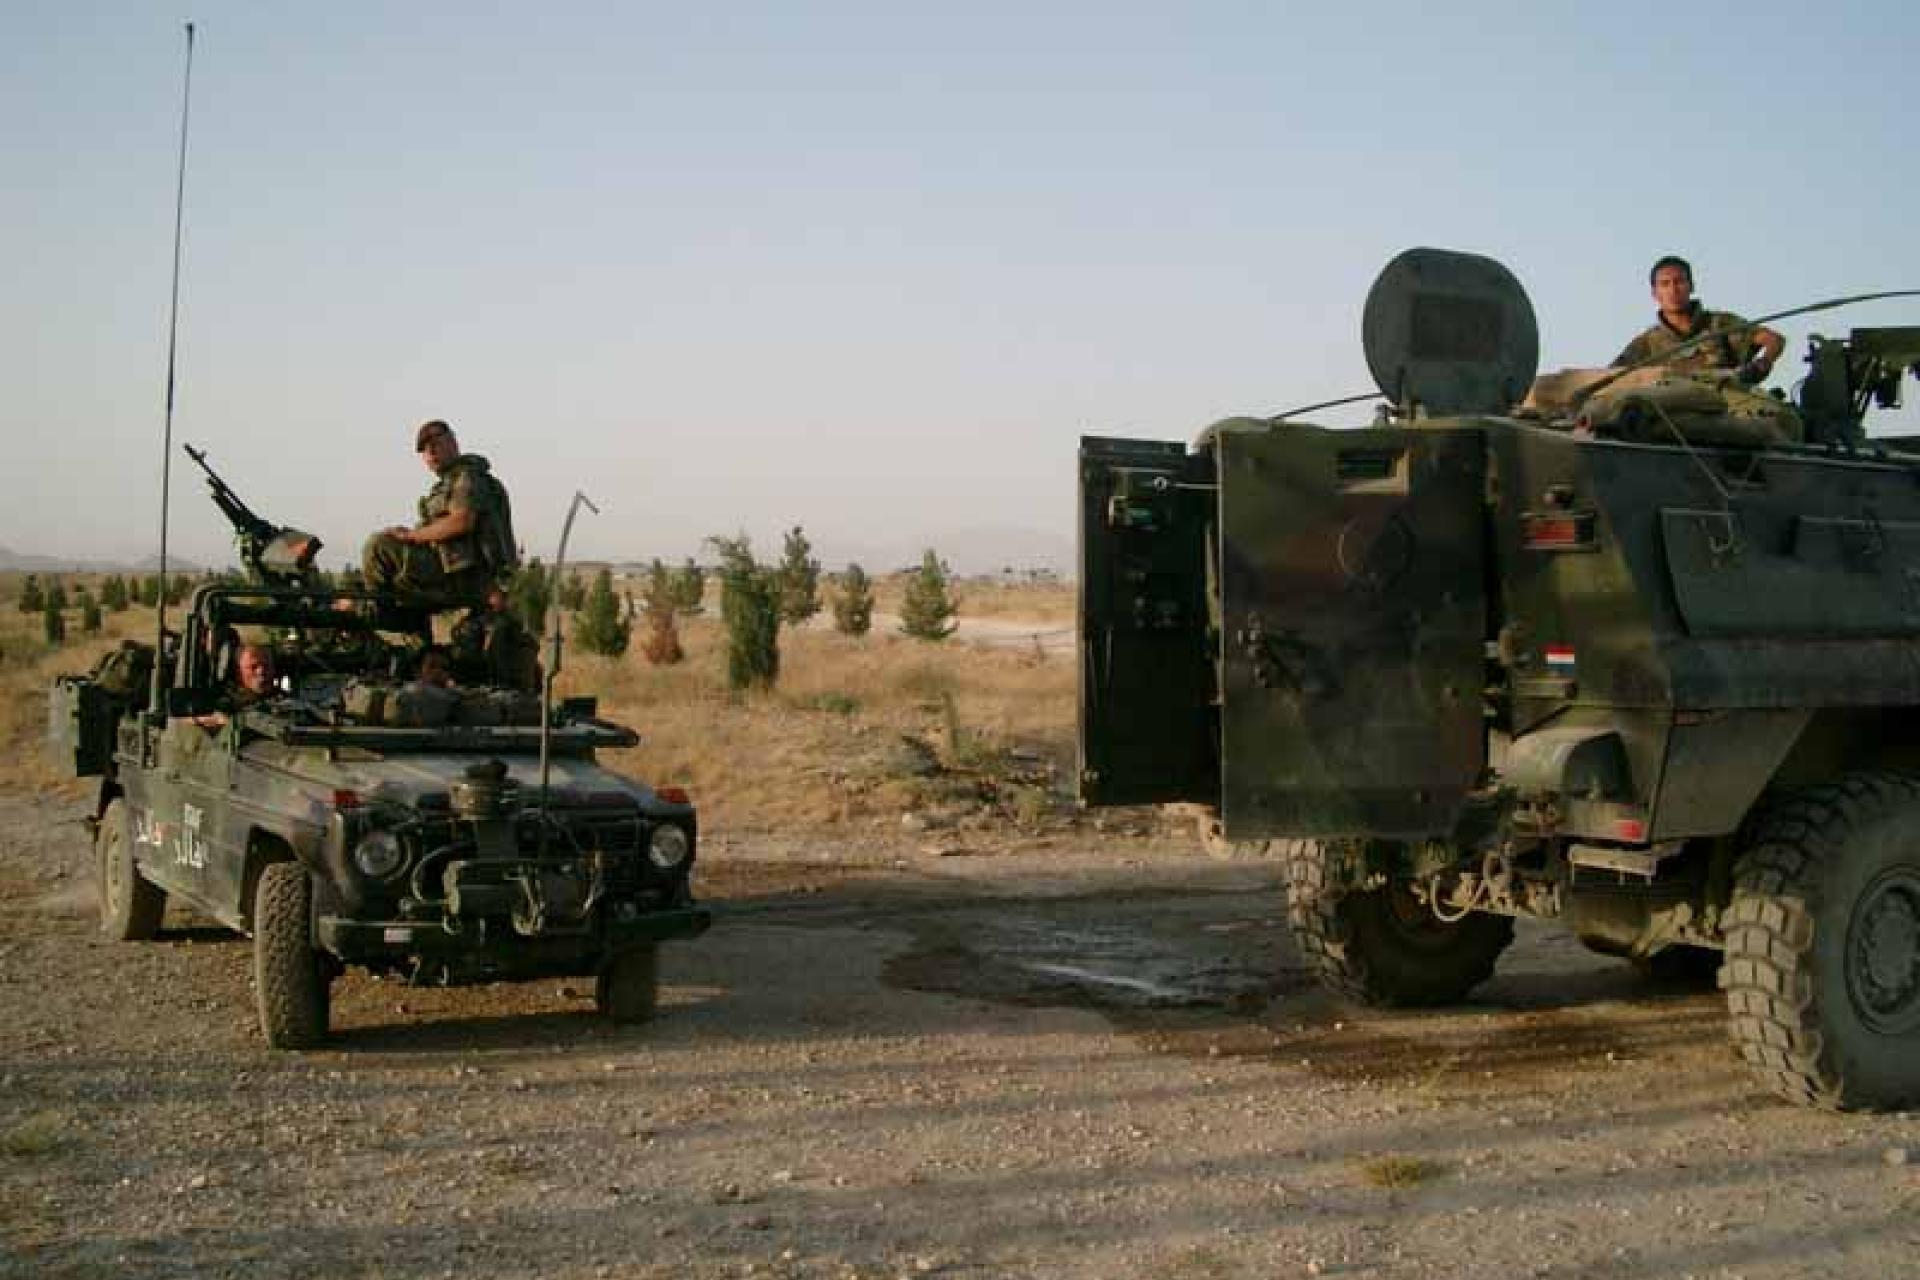 Militaire voertuigen met soldaten staan op een zandweg